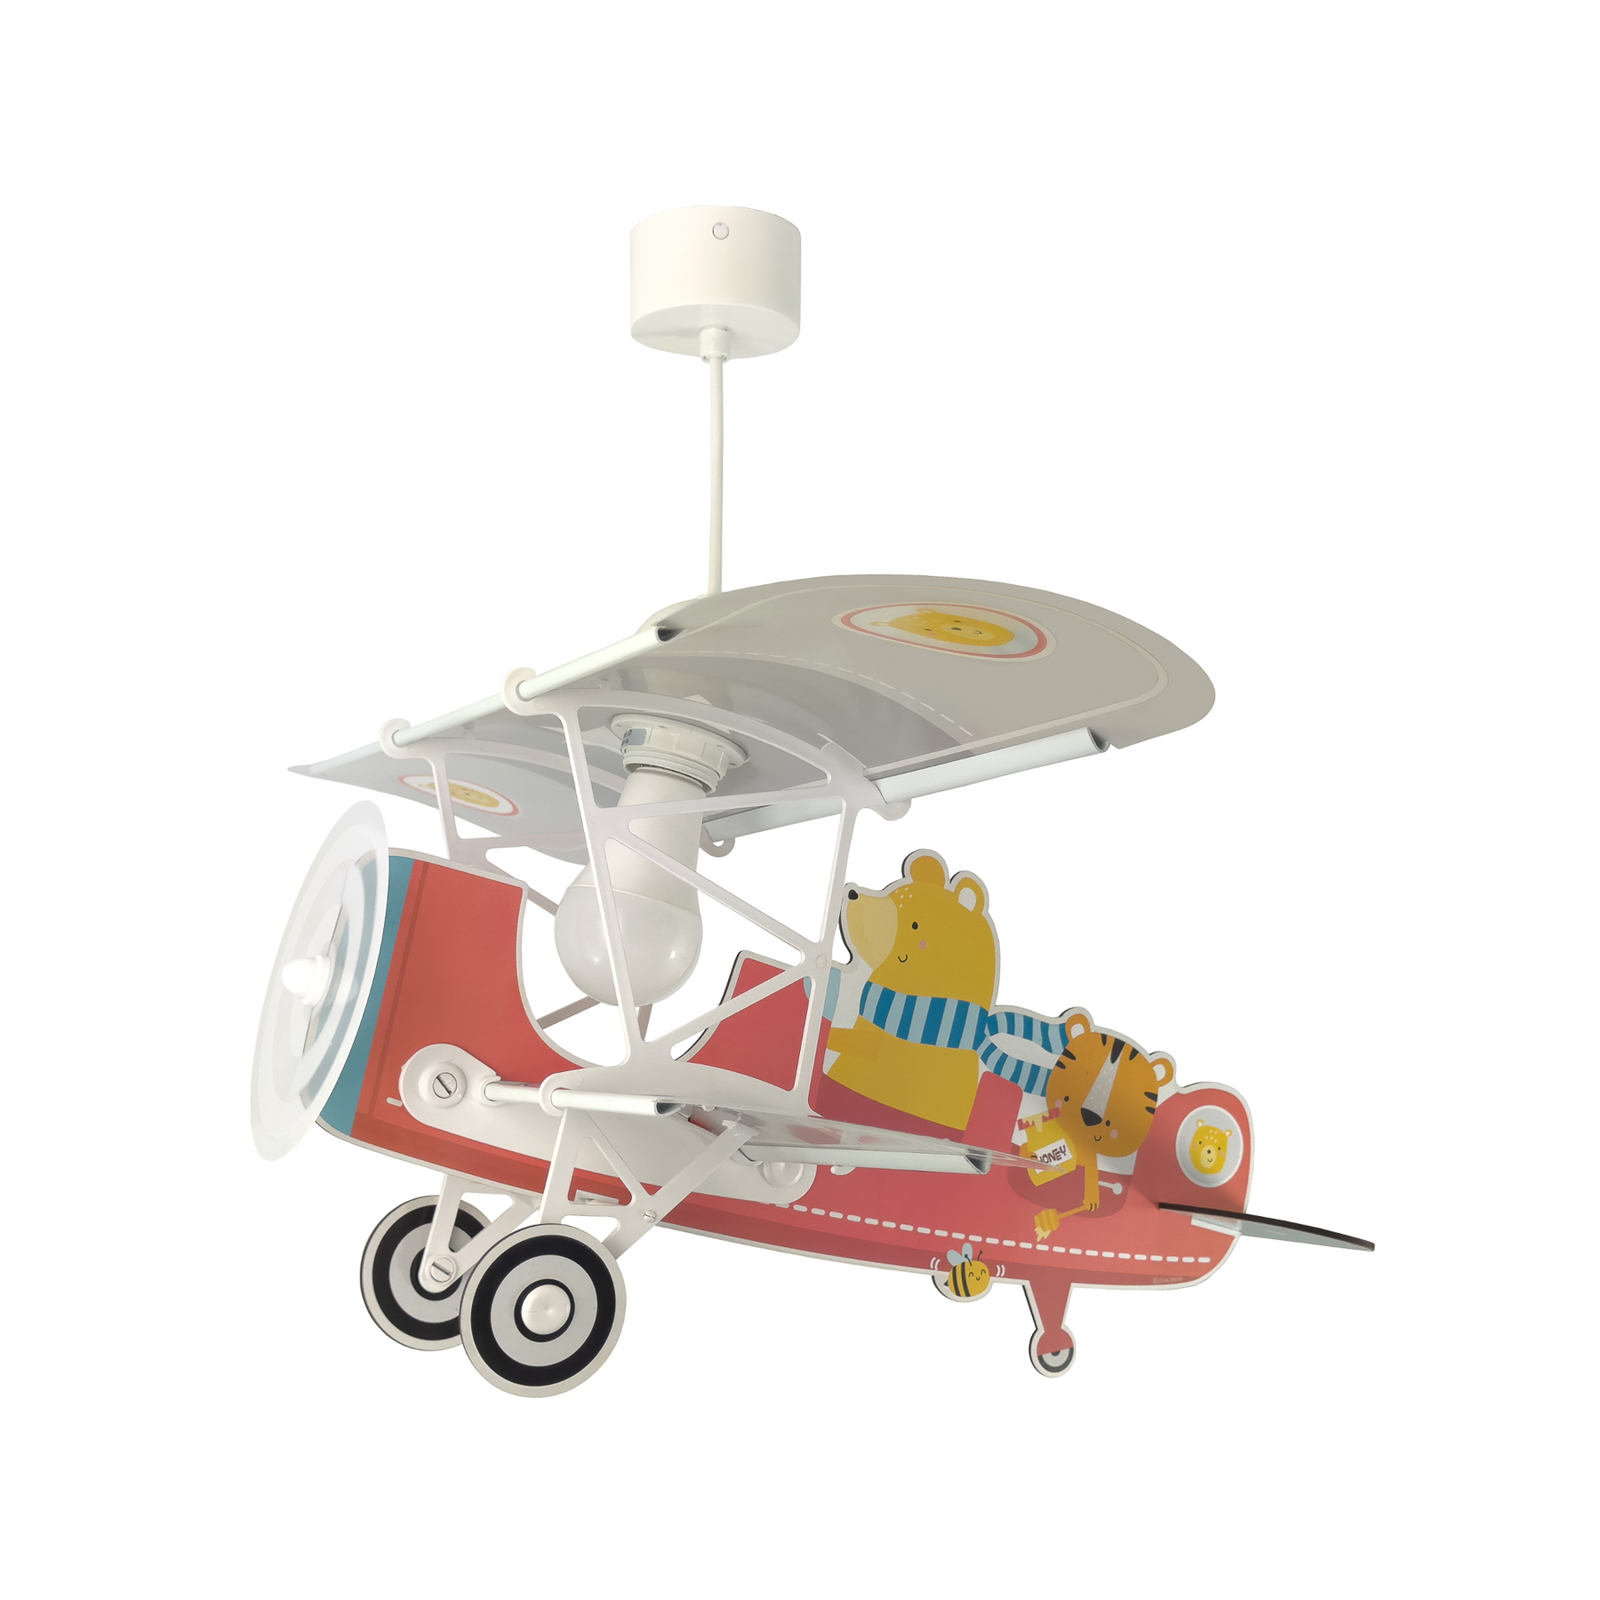 Candeeiro suspenso Dalber Teddy Plane, colorido, madeira/plástico